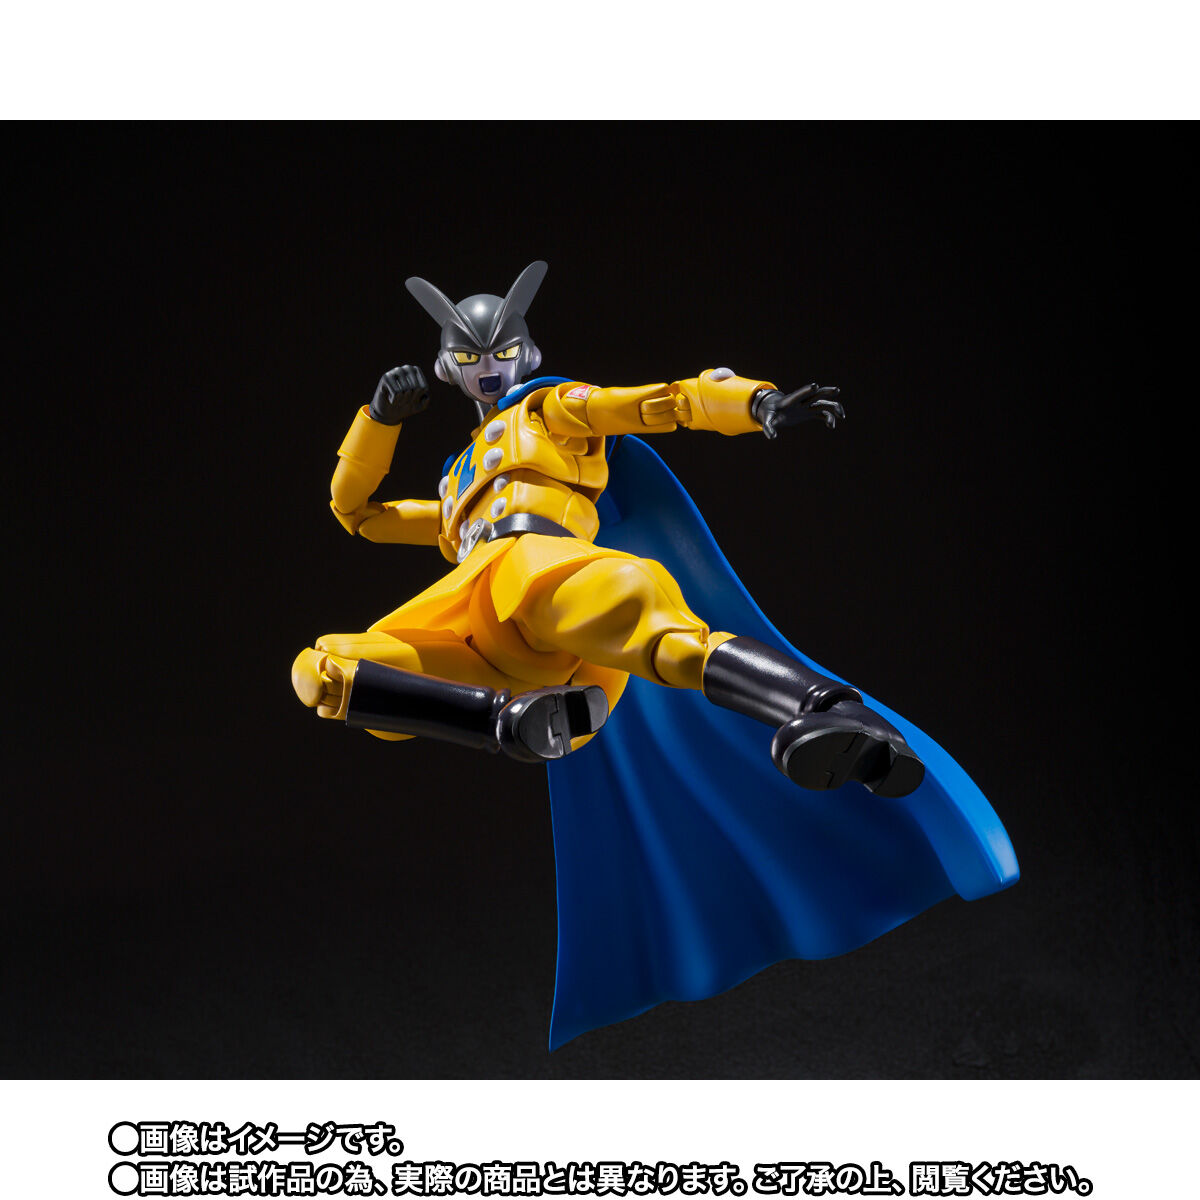 【限定販売】S.H.Figuarts『ガンマ1号』ドラゴンボール超 スーパーヒーロー 可動フィギュア-017